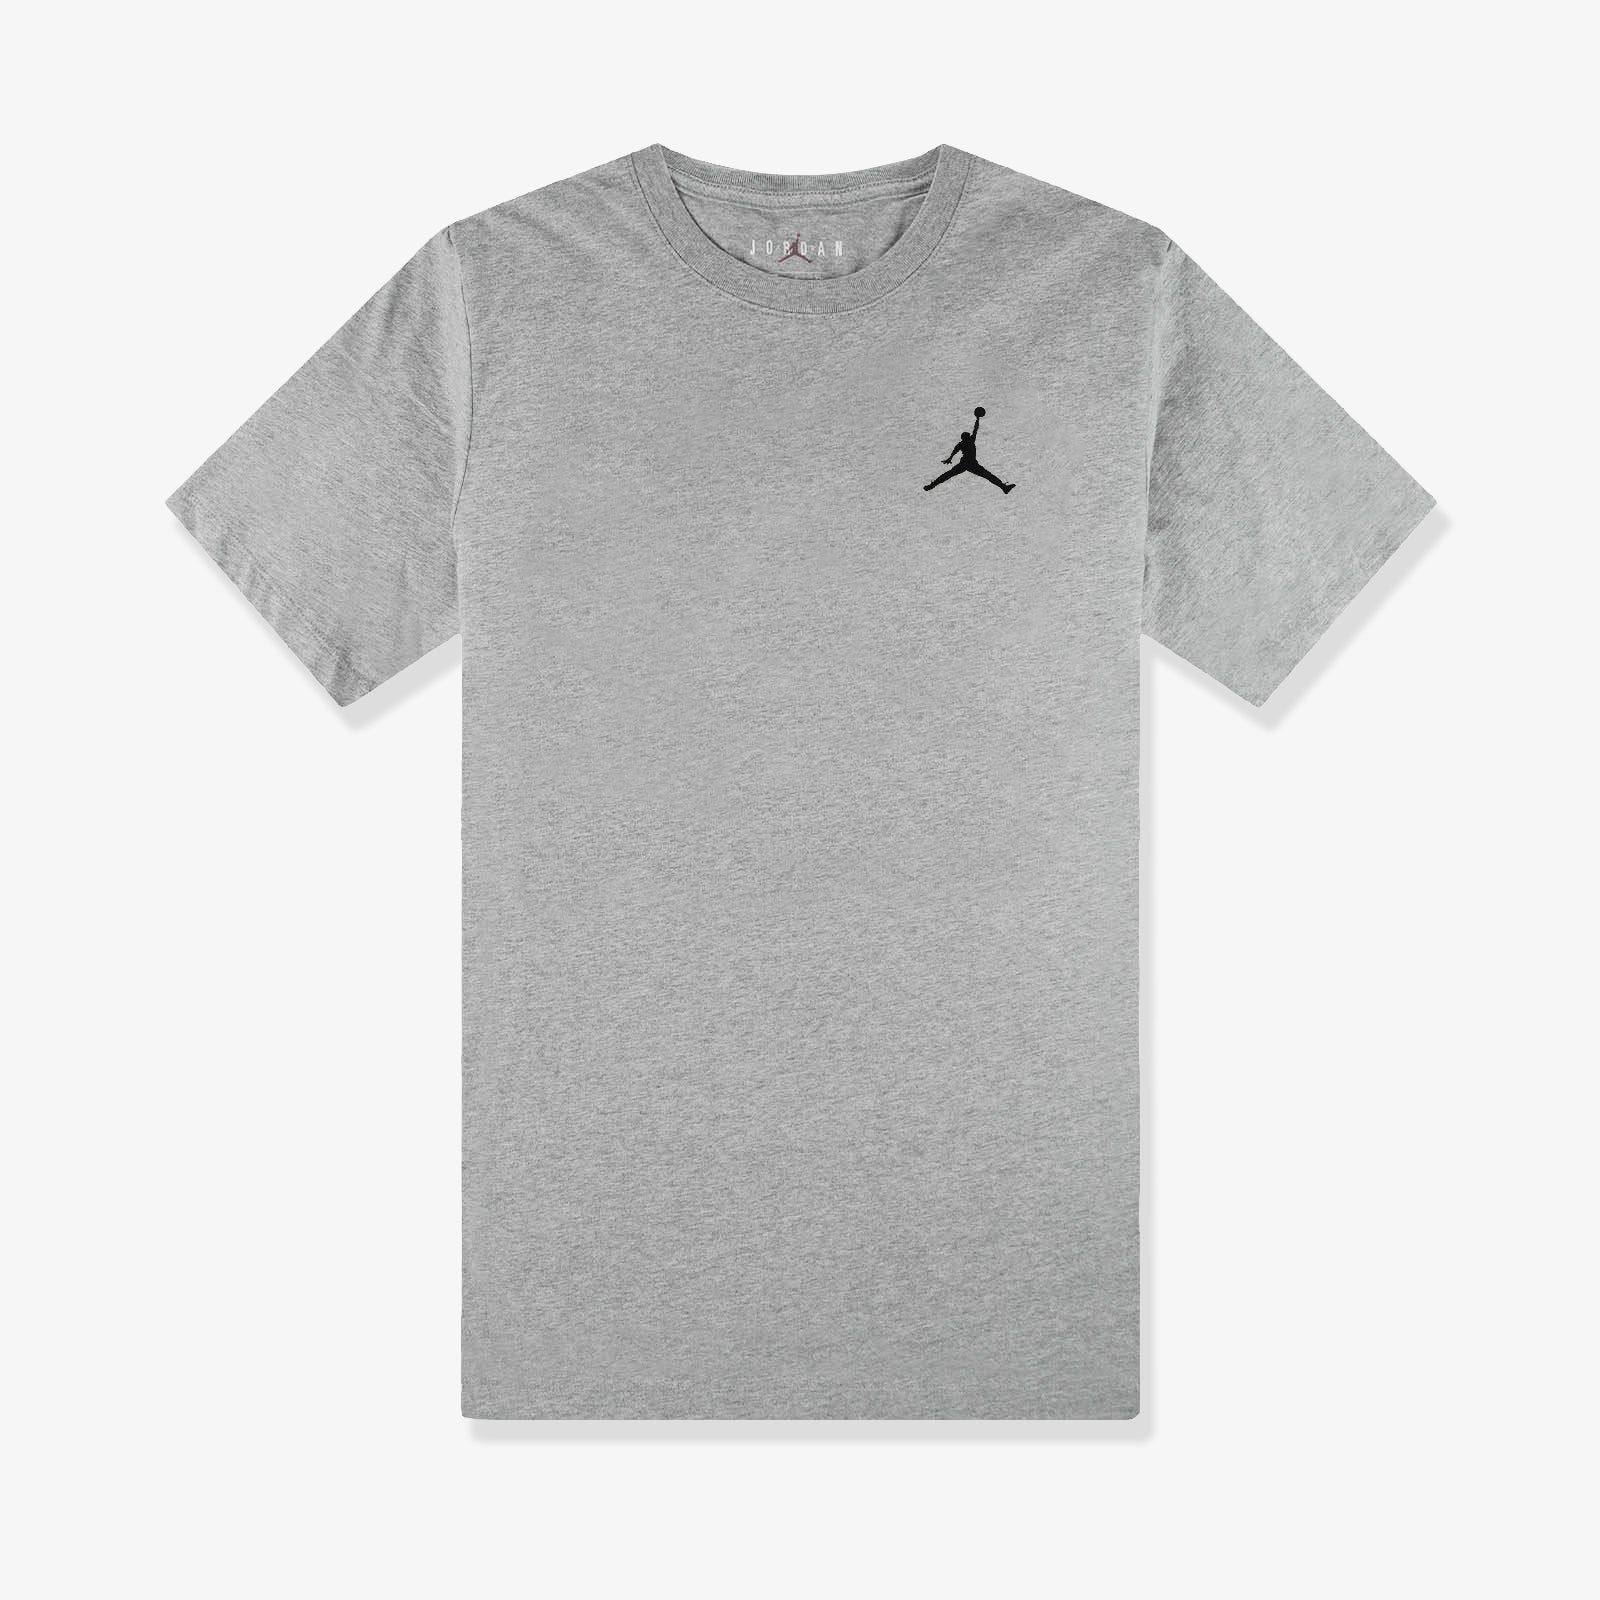 grey air jordan shirt